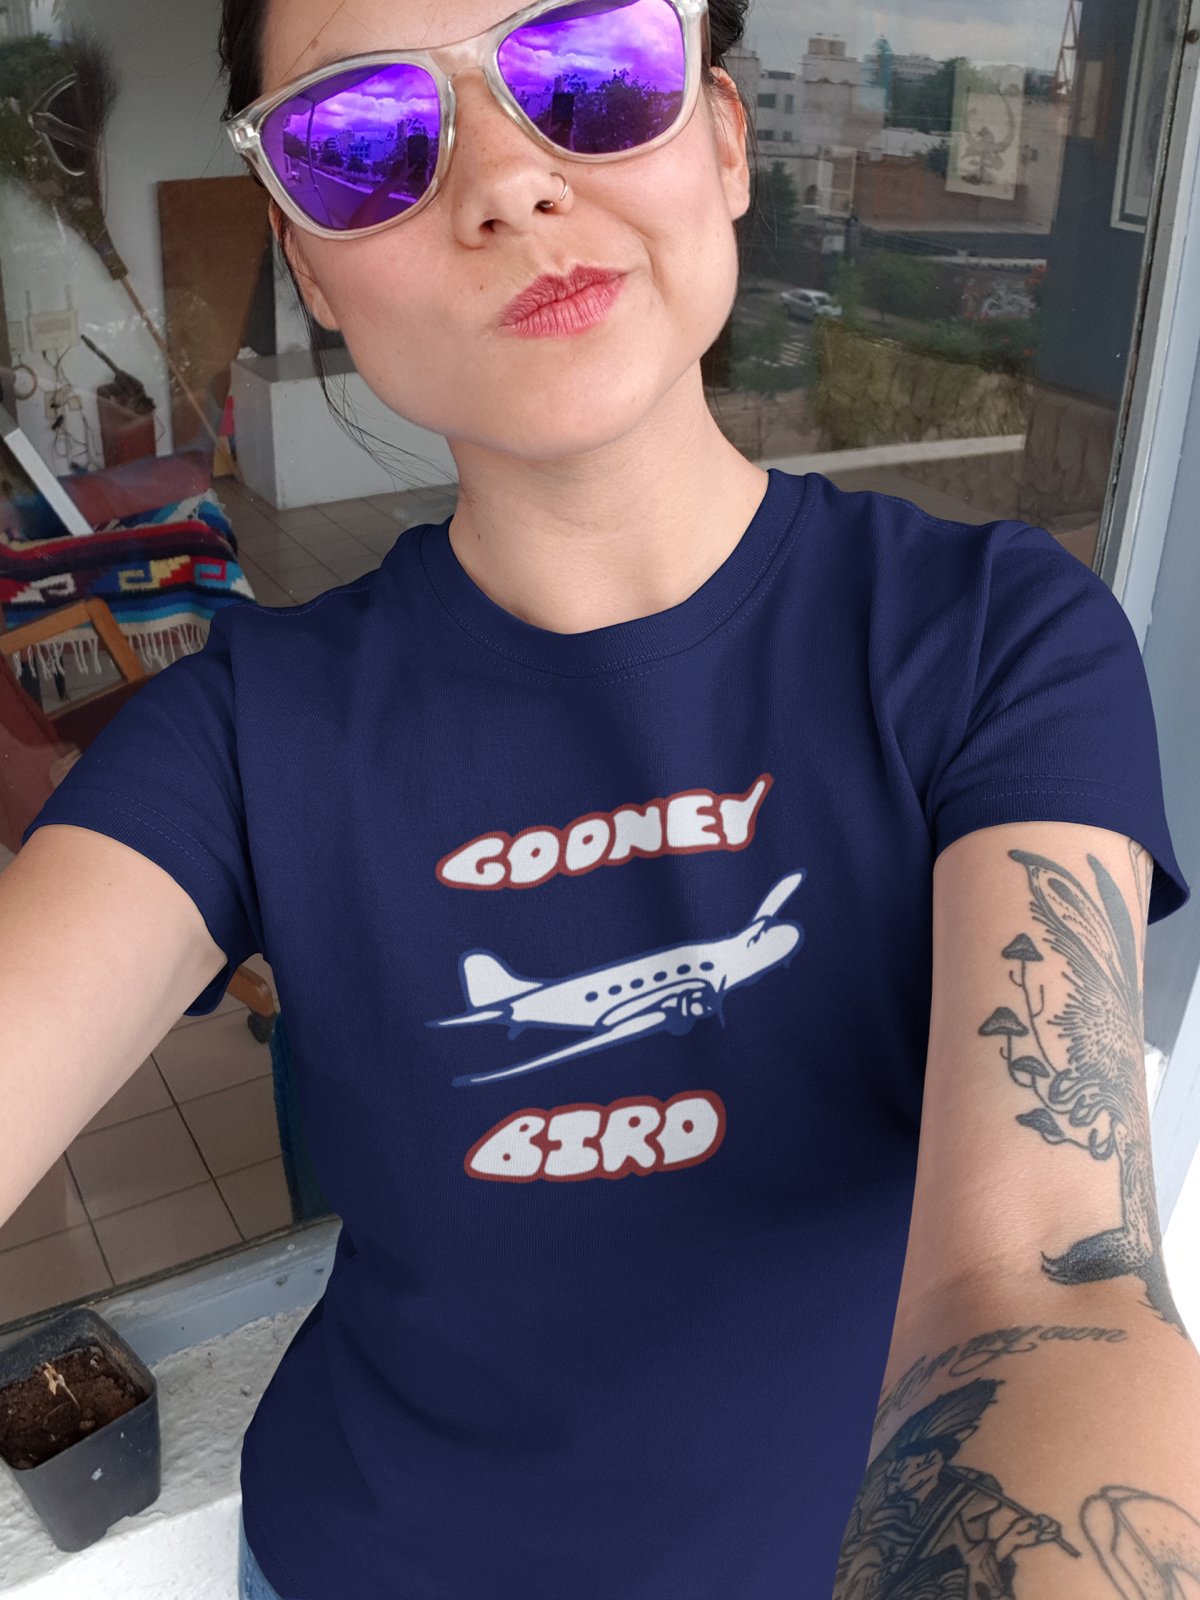 Gooney Bird Men's/Women's Short Sleeve T-Shirt!!!